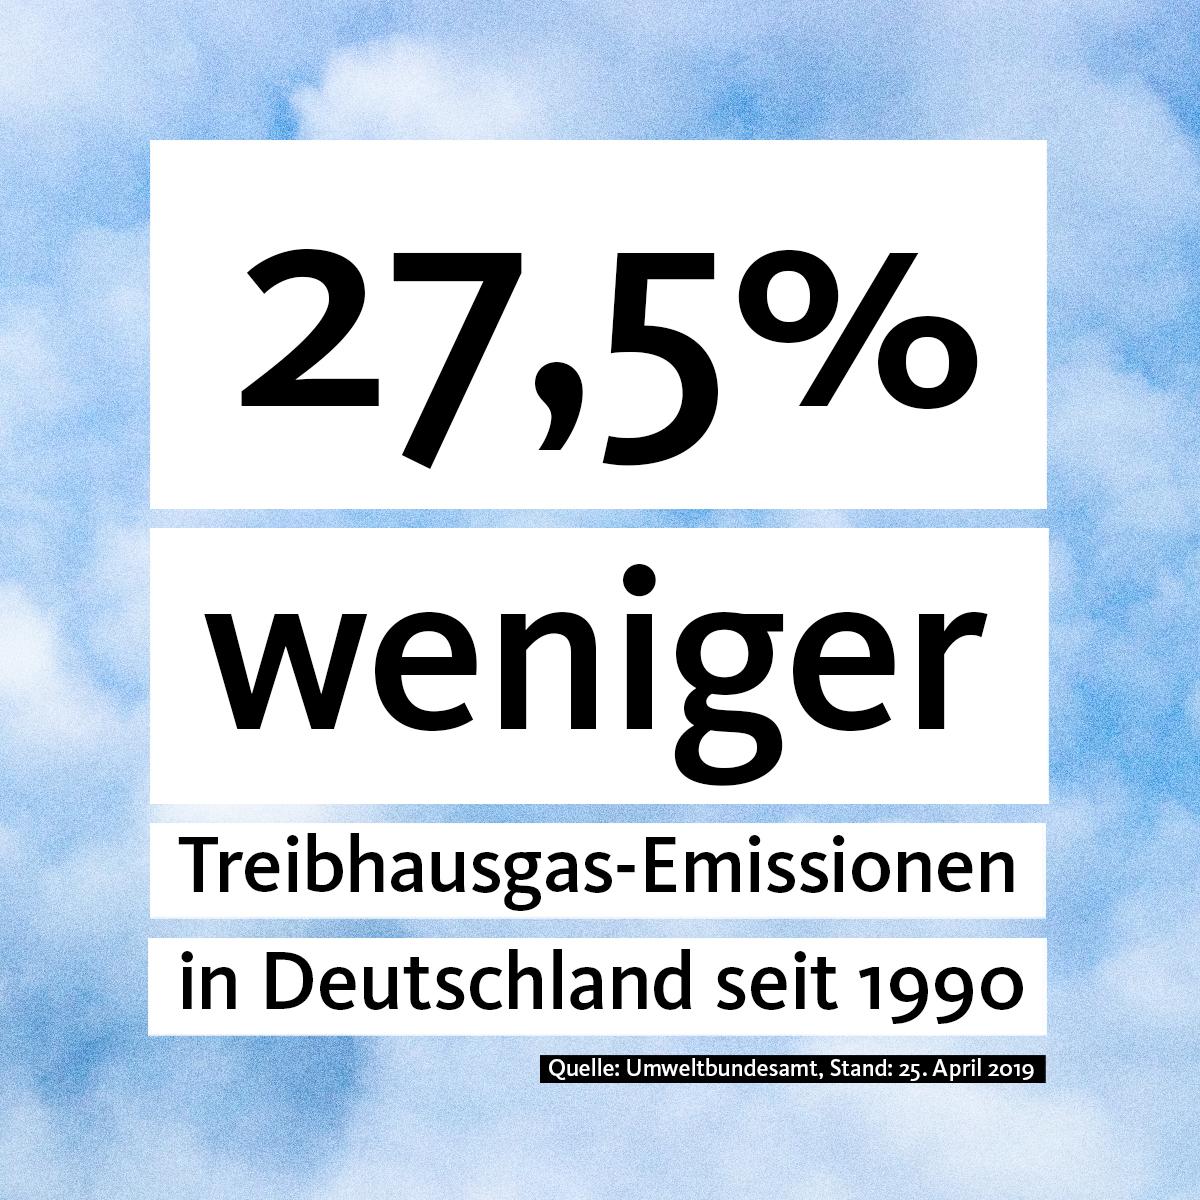 27,5% weniger Treibhausgas-Emissionen in Deutschland seit 1990